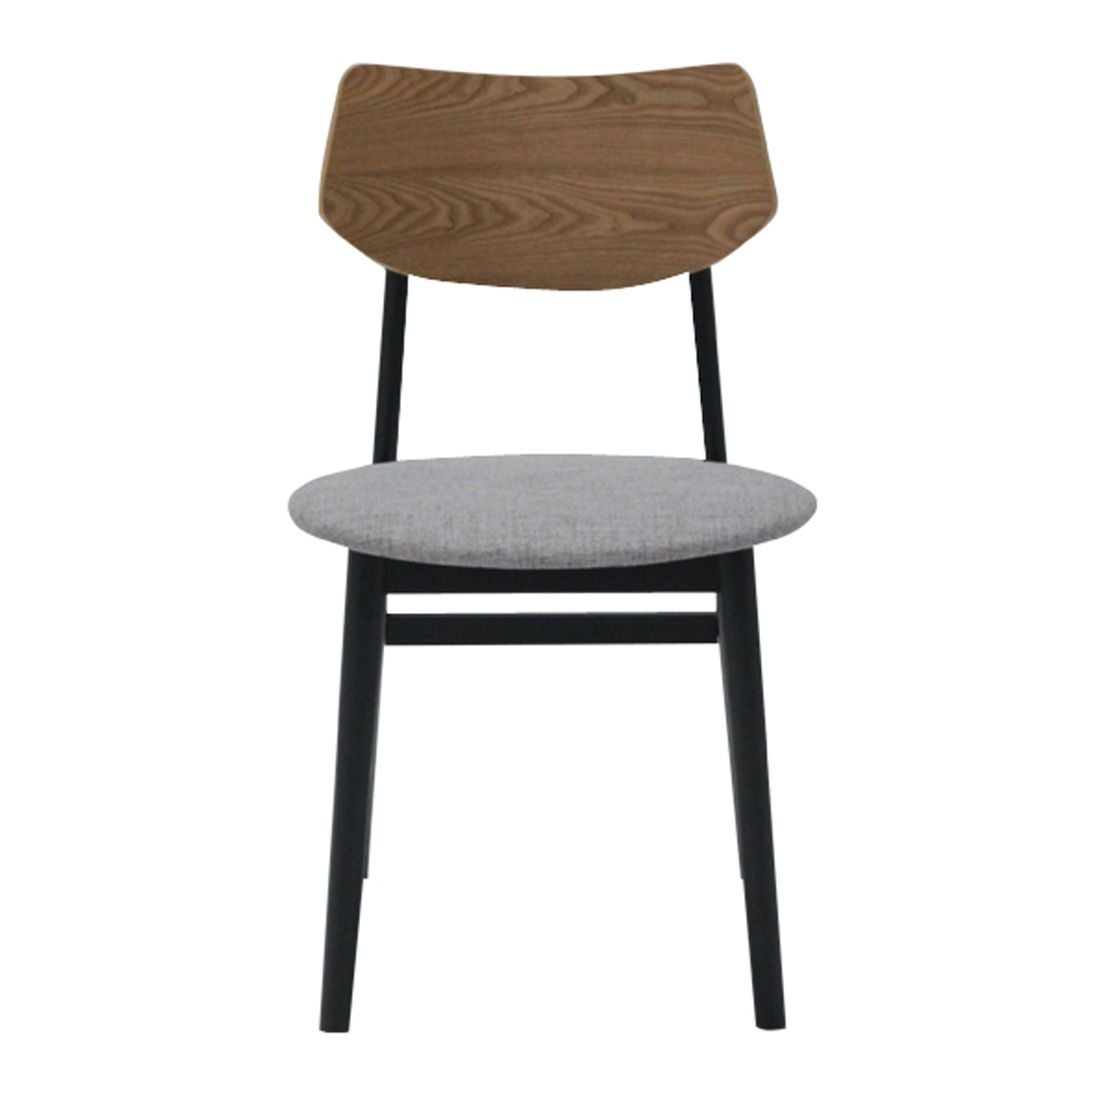 เก้าอี้ทานอาหาร เก้าอี้ไม้เบาะผ้า รุ่น M-Pazo สีสีเทา-SB Design Square